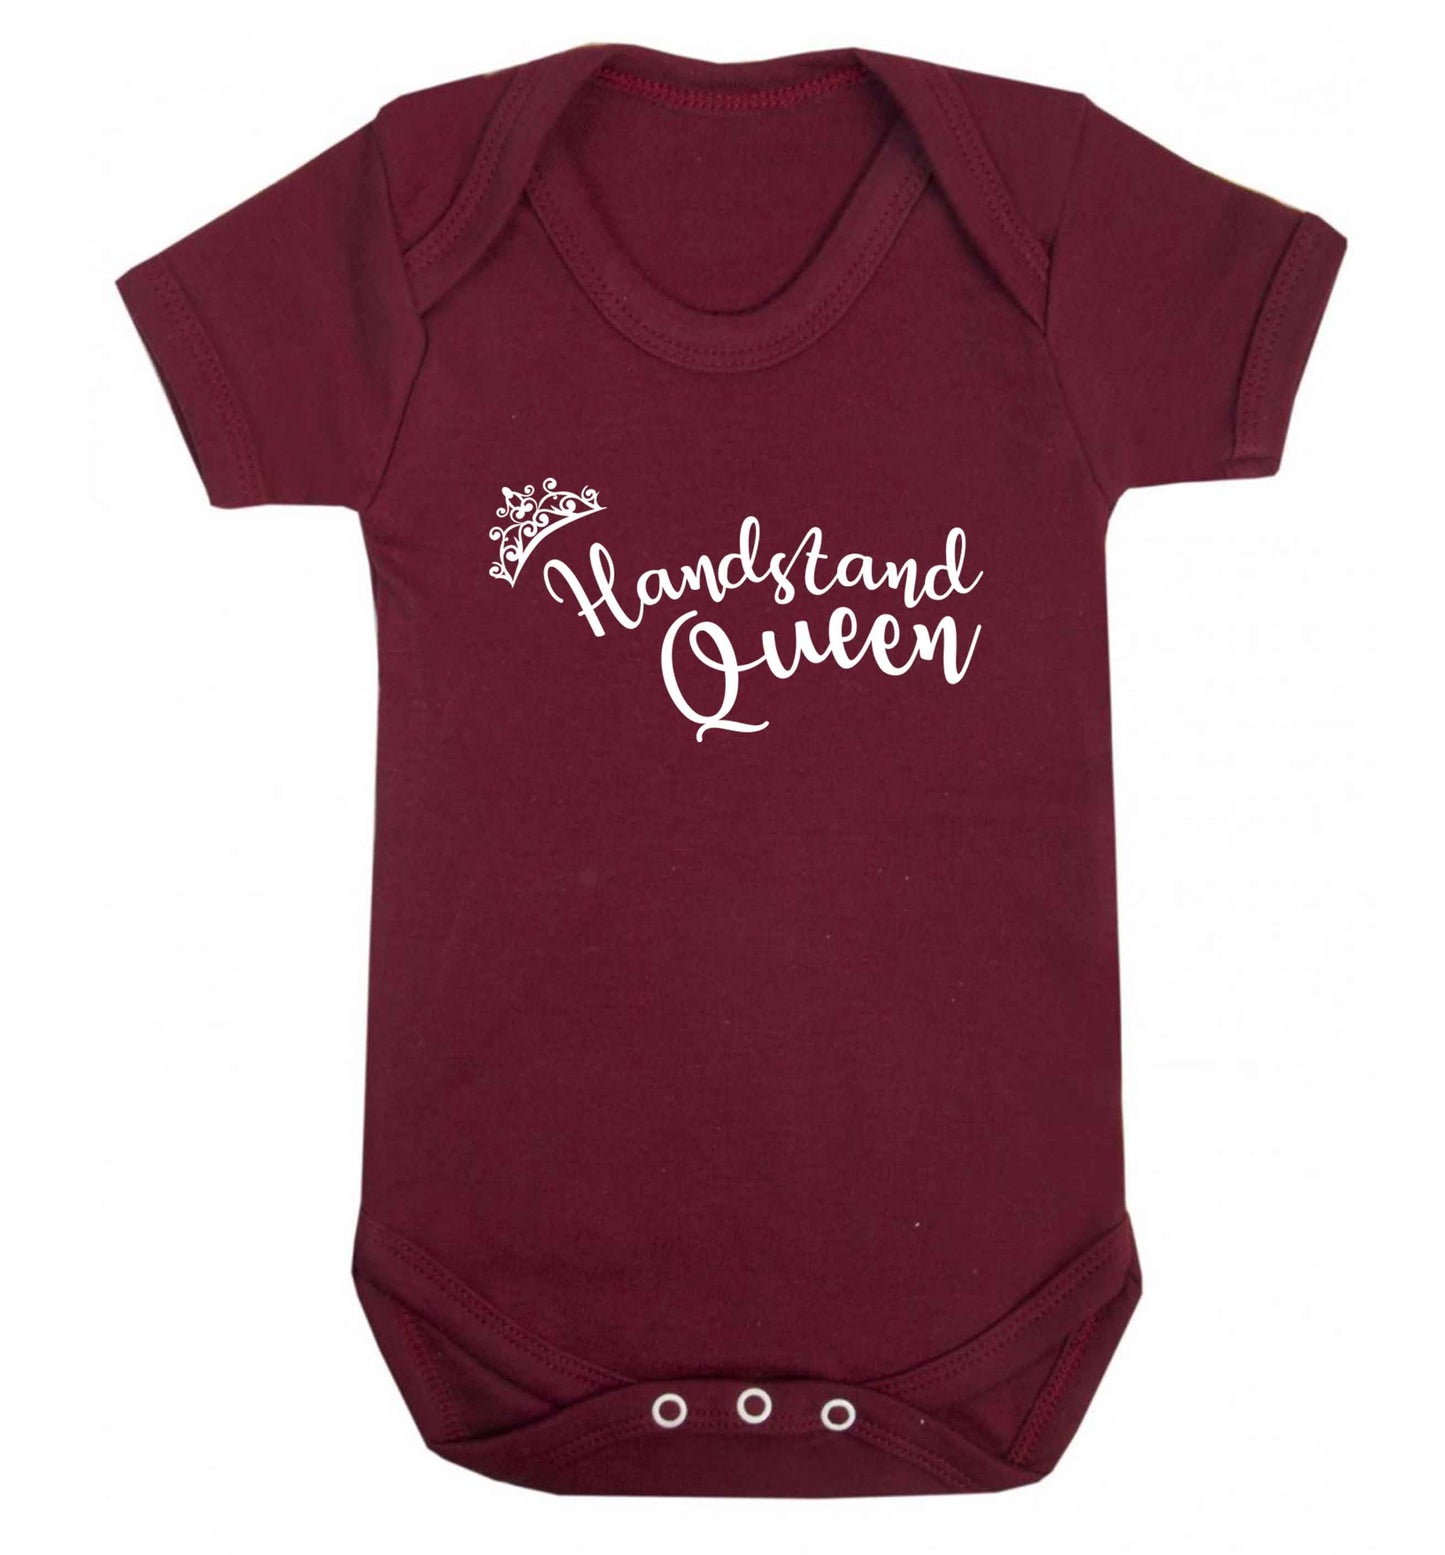 Handstand Queen Baby Vest maroon 18-24 months